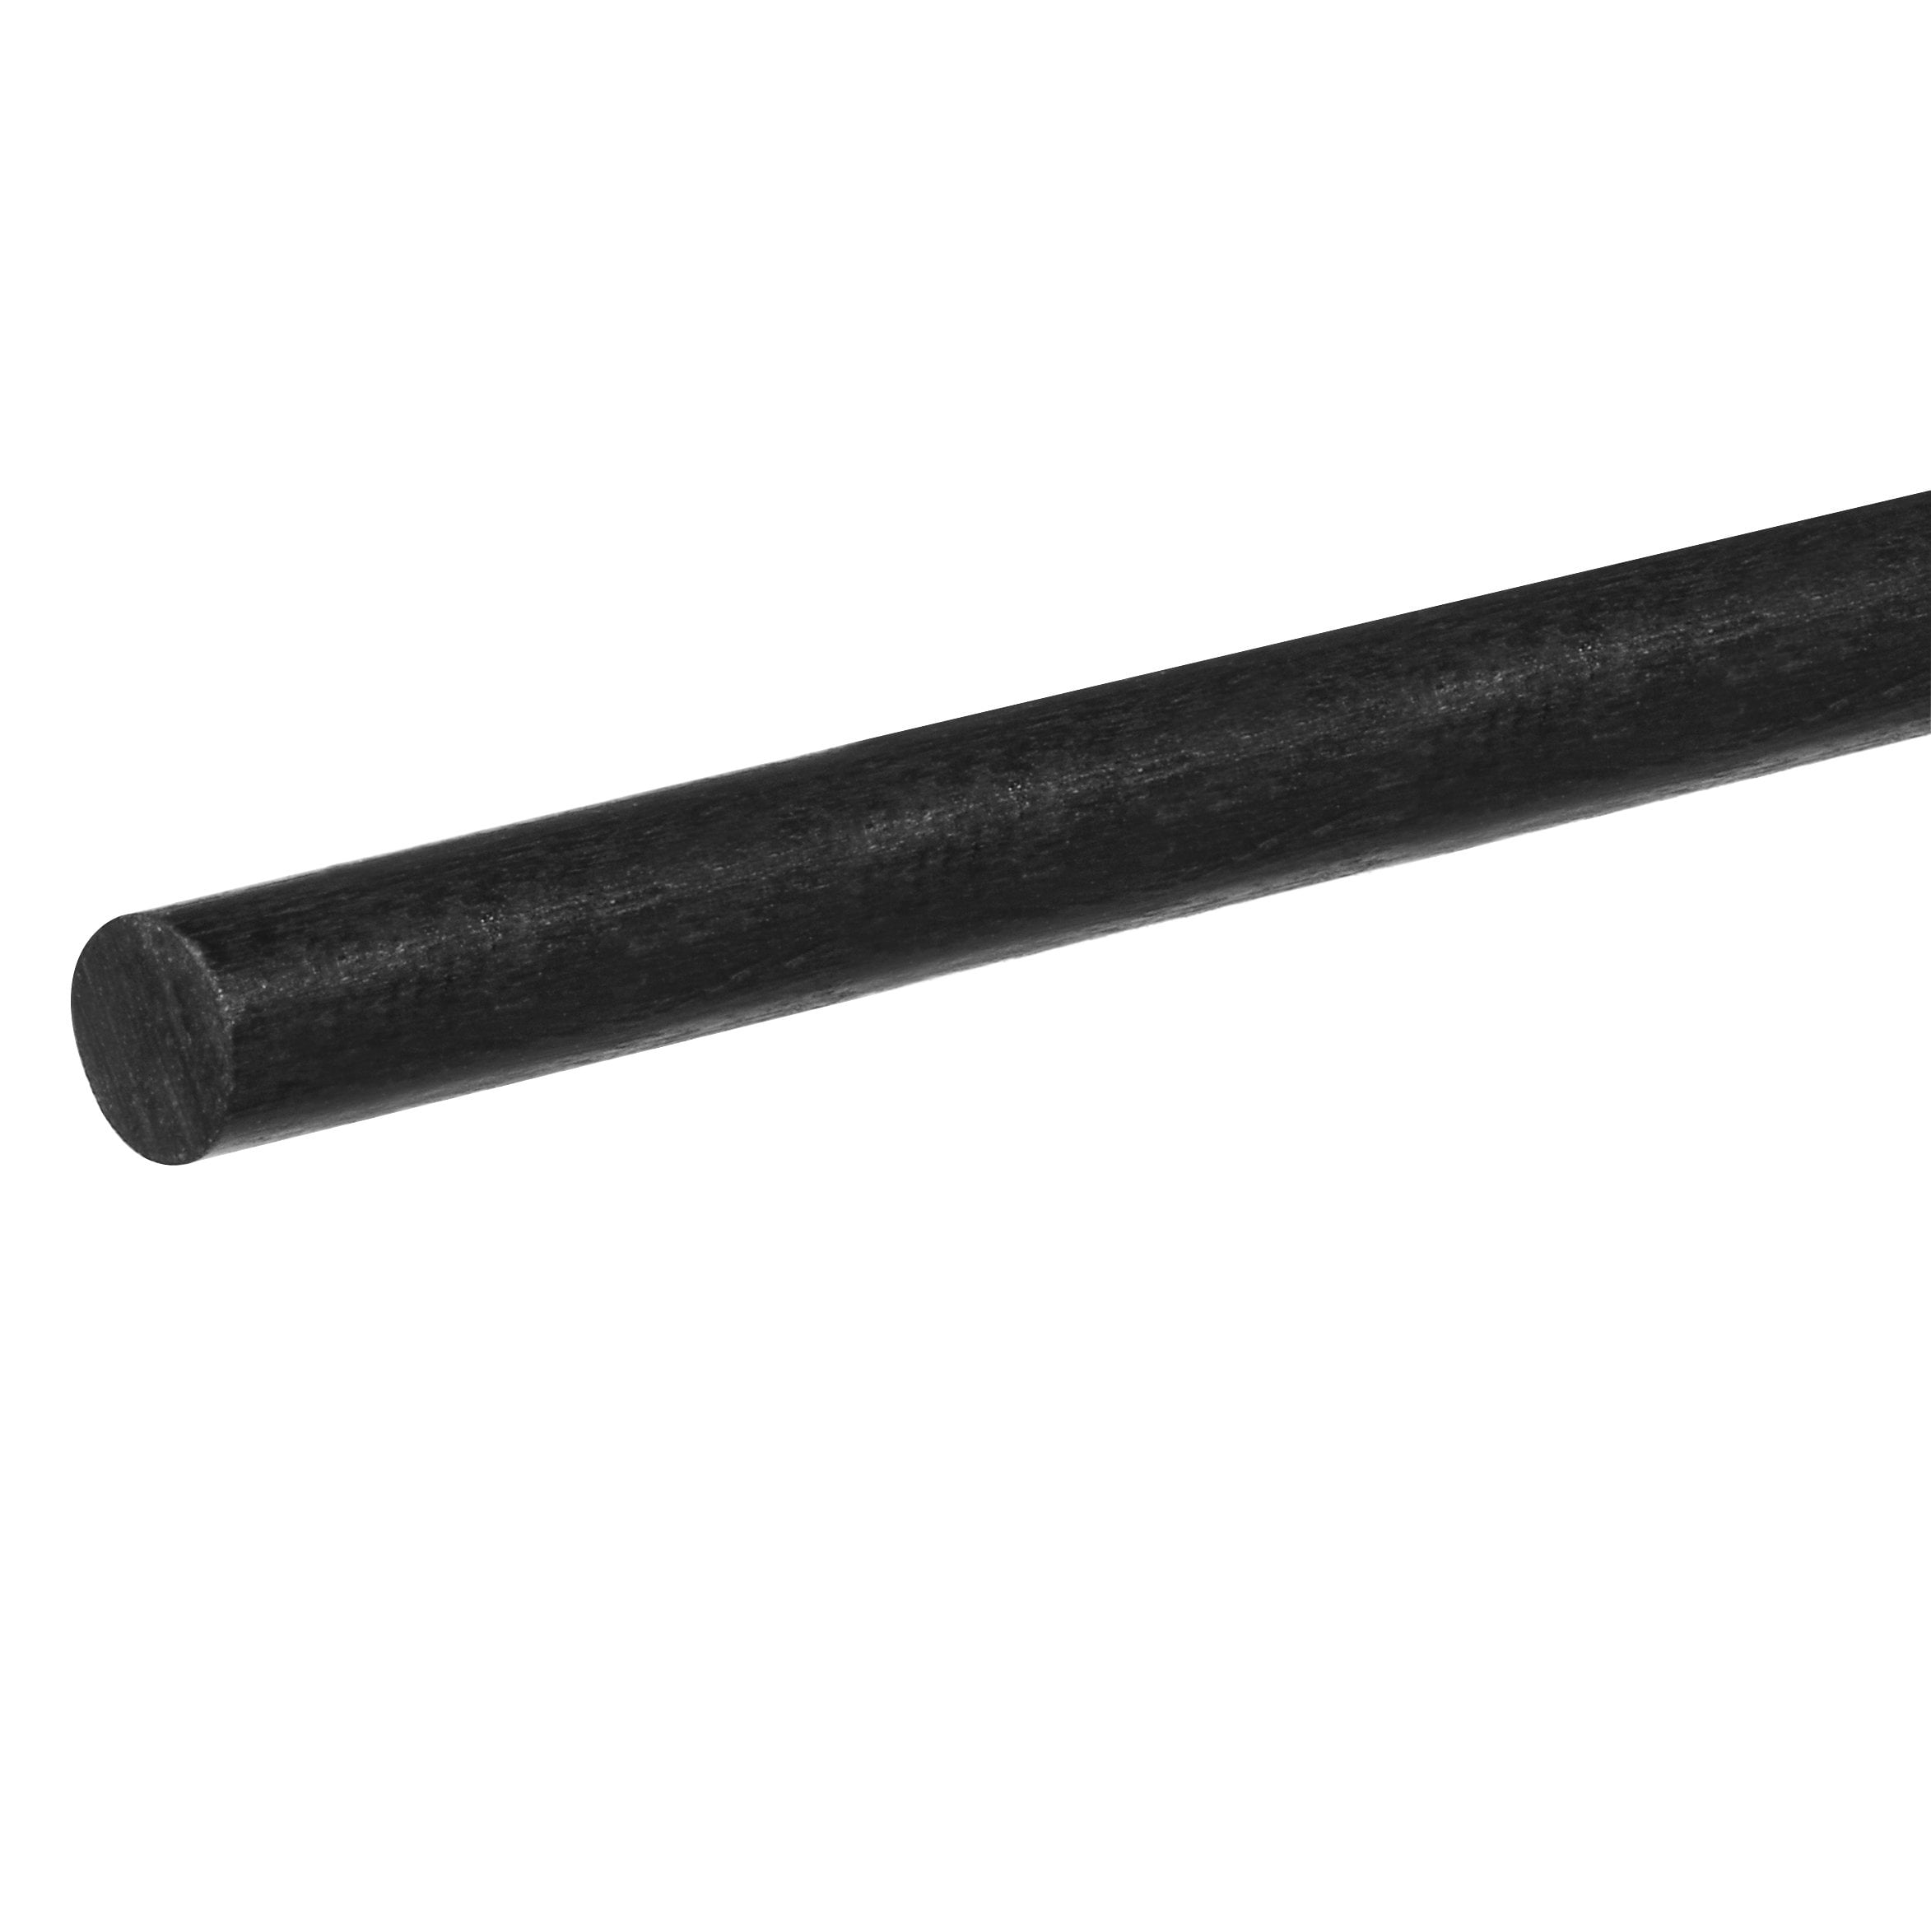 Long 3/4 Diameter x 1 ft USA Sealing G-10/FR4 Garolite Rod 